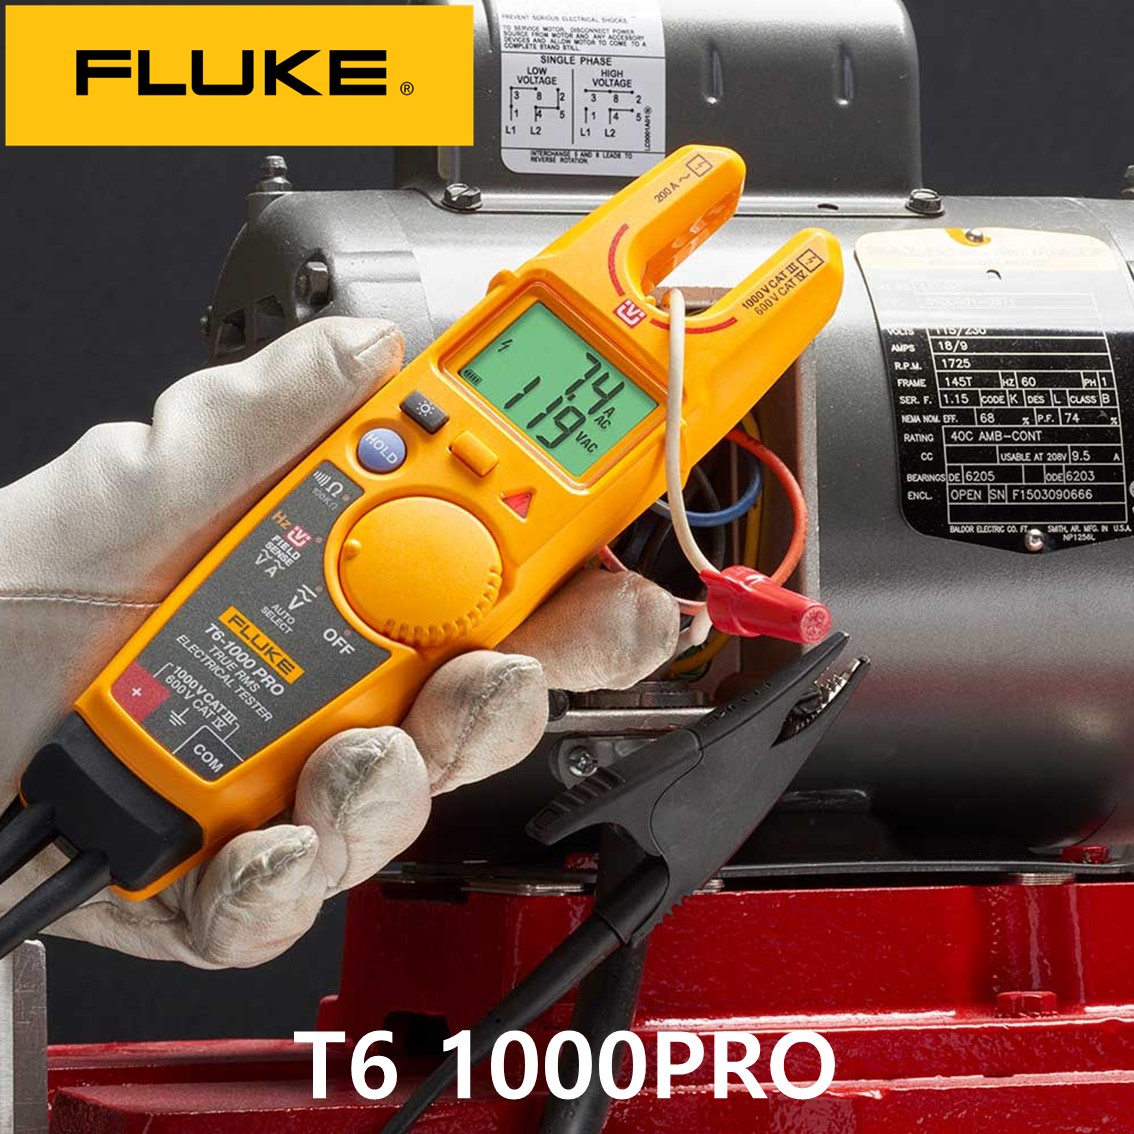 [ FLUKE T6 1000PRO ] 정품 오픈형 클램프미터 (1000V,200A)